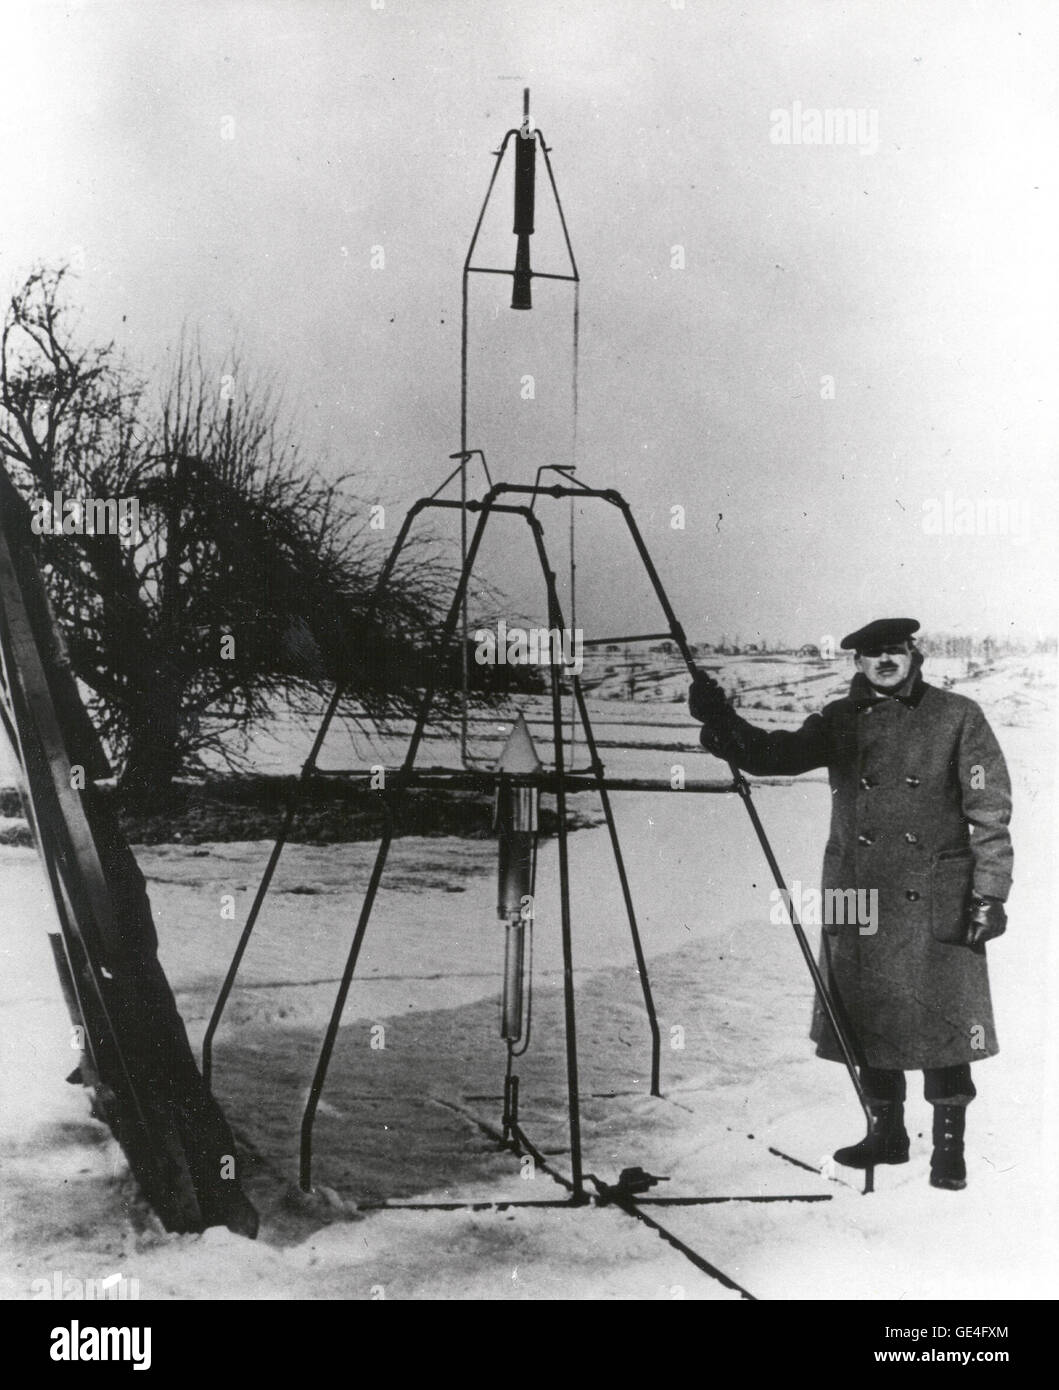 El Dr. Robert H. Goddard y un cohete de gasolina de oxígeno líquido en el fotograma desde el que se disparó el 16 de marzo de 1926, en Auburn, Massachusetts. Desde 1930 a 1941, el Dr. Goddard progresos sustanciales en el desarrollo de cohetes cada vez mayores, que alcanzaron una altura de 2400 metros, y afinó su equipo para orientación y control, sus técnicas de soldadura y su aislamiento, bombas y otros equipos asociados. En muchos sentidos, el Dr. Goddard sentó los fundamentos esenciales de la práctica de tecnología de cohetes. Él es considerado uno de los padres de los cohetes junto con Konstantin Tsiolovsky Foto de stock